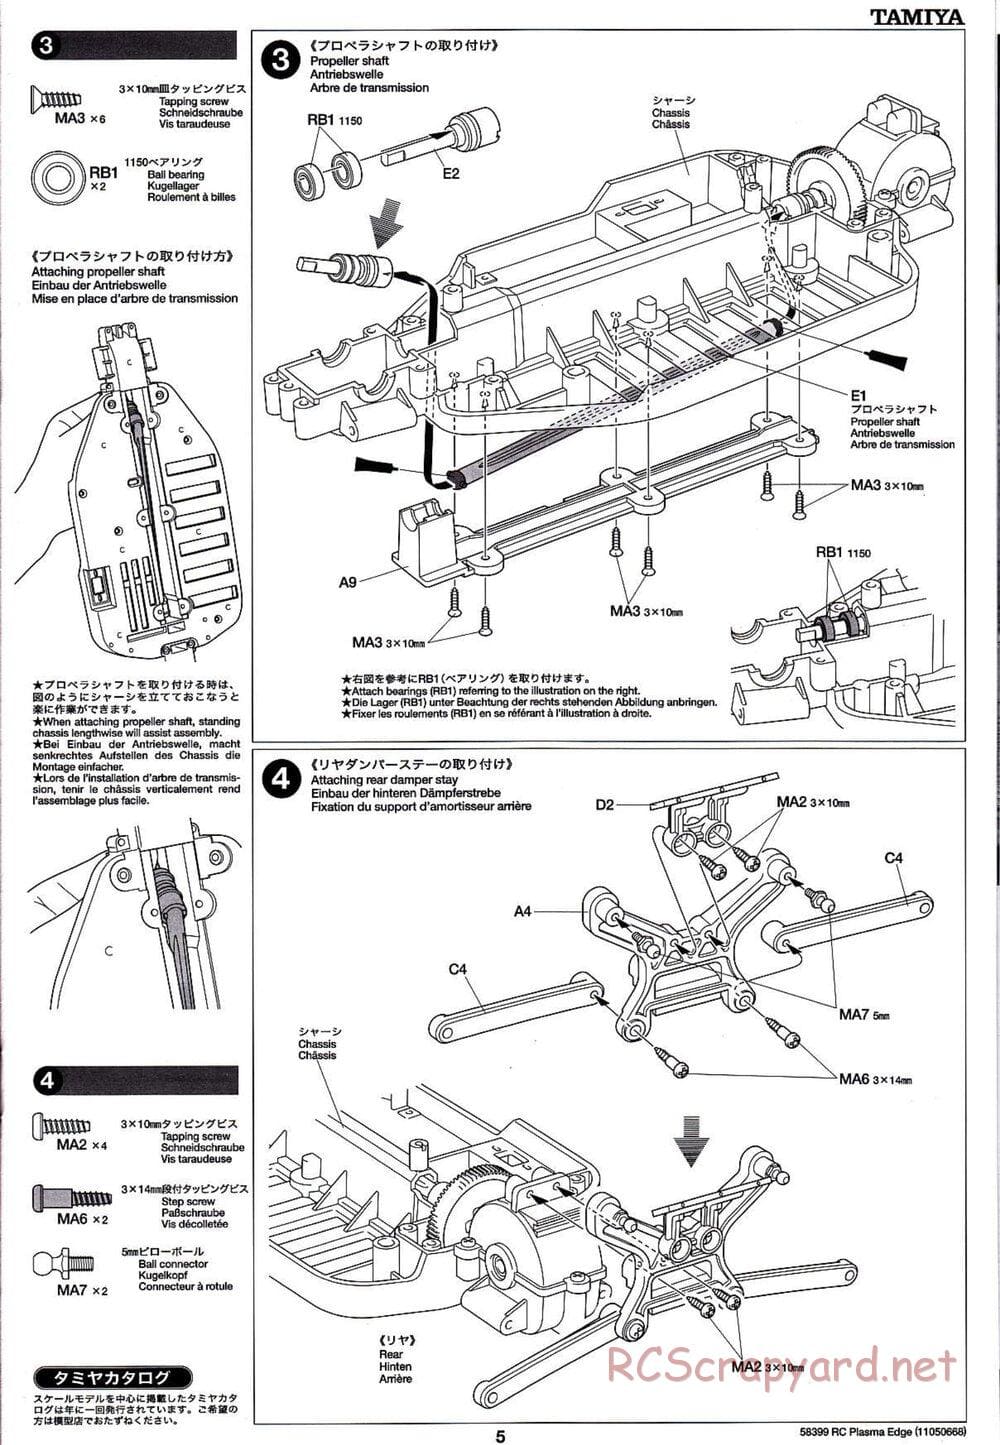 Tamiya - Plasma Edge Chassis - Manual - Page 5